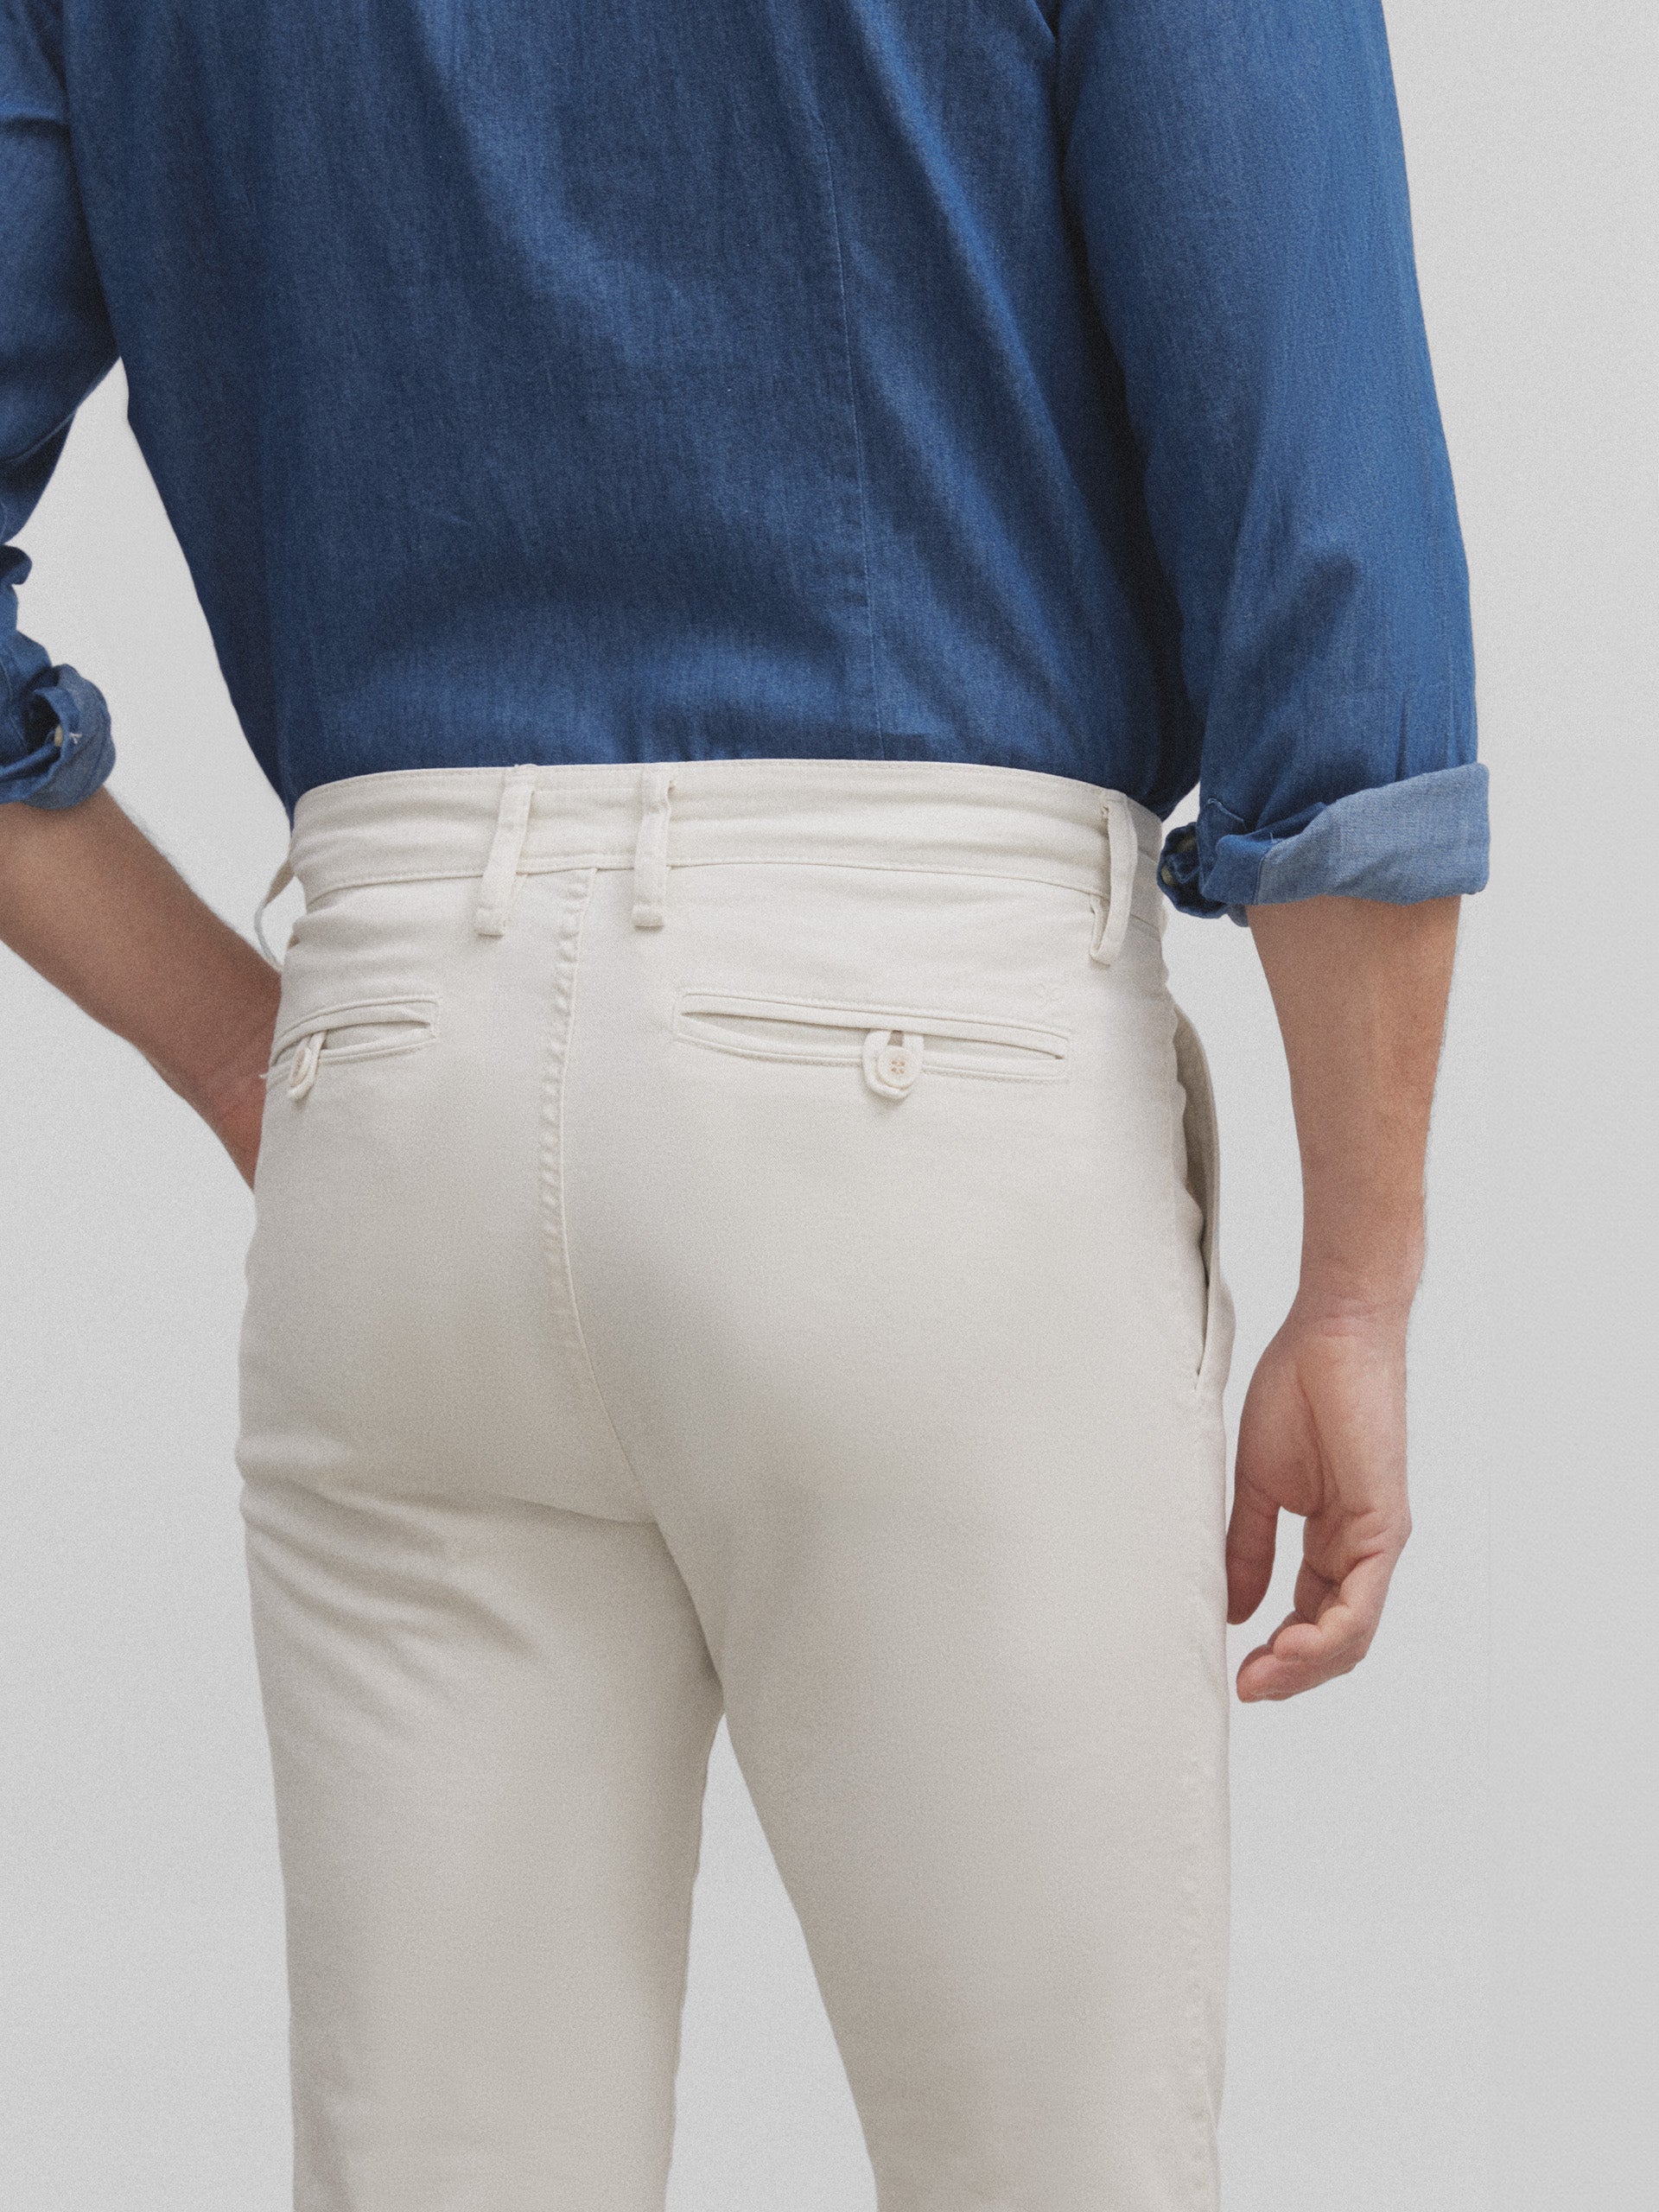 Pantalon de sport chino allongé beige clair